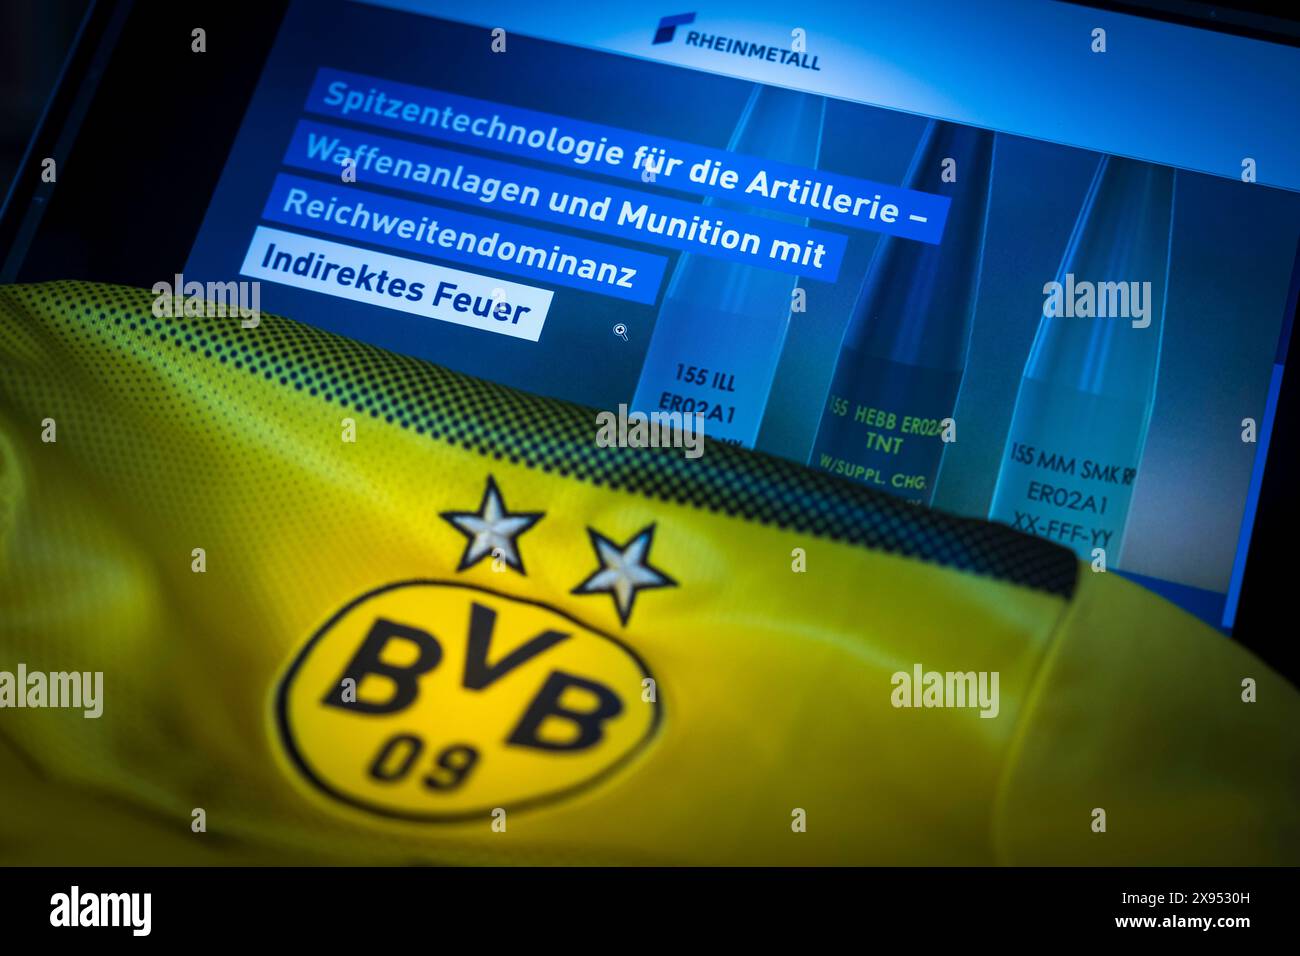 Foto simbolica l'azienda di armamenti Rheinmetall diventa il nuovo sponsor di BVB Borussia Dortmund. Foto Stock